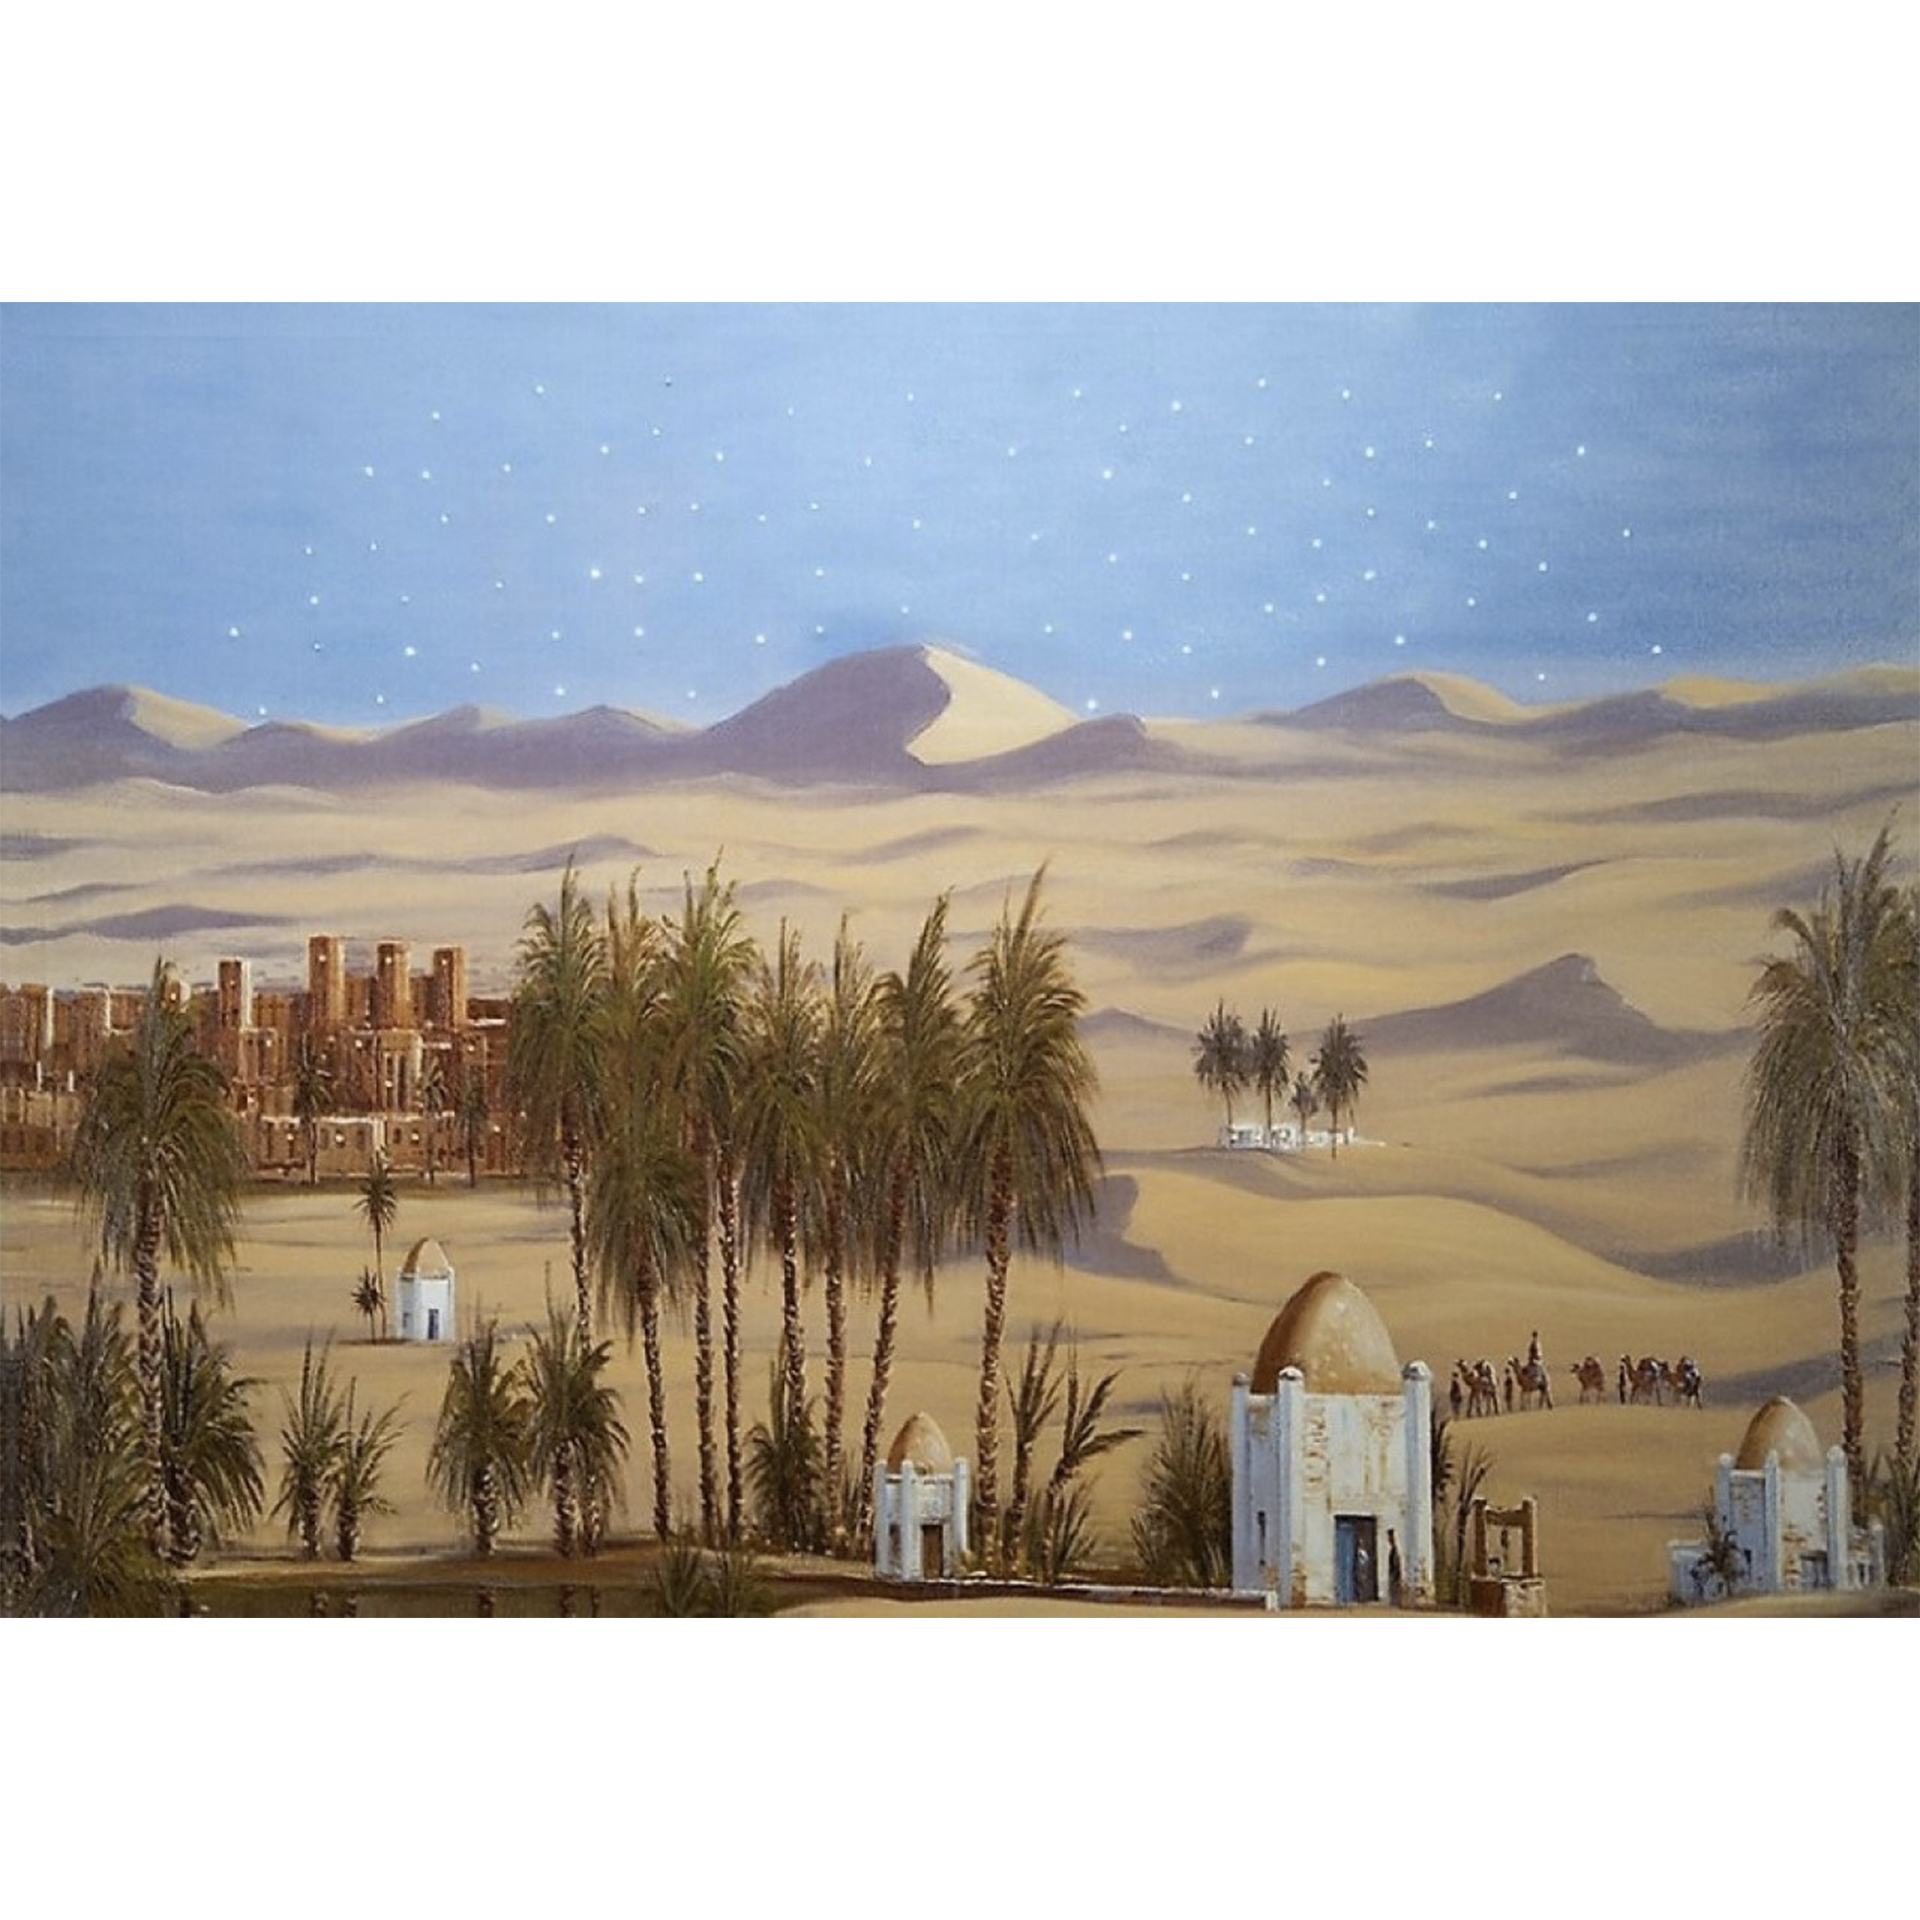 Gebäude und Palmen in Wüste mit blauem Himmel